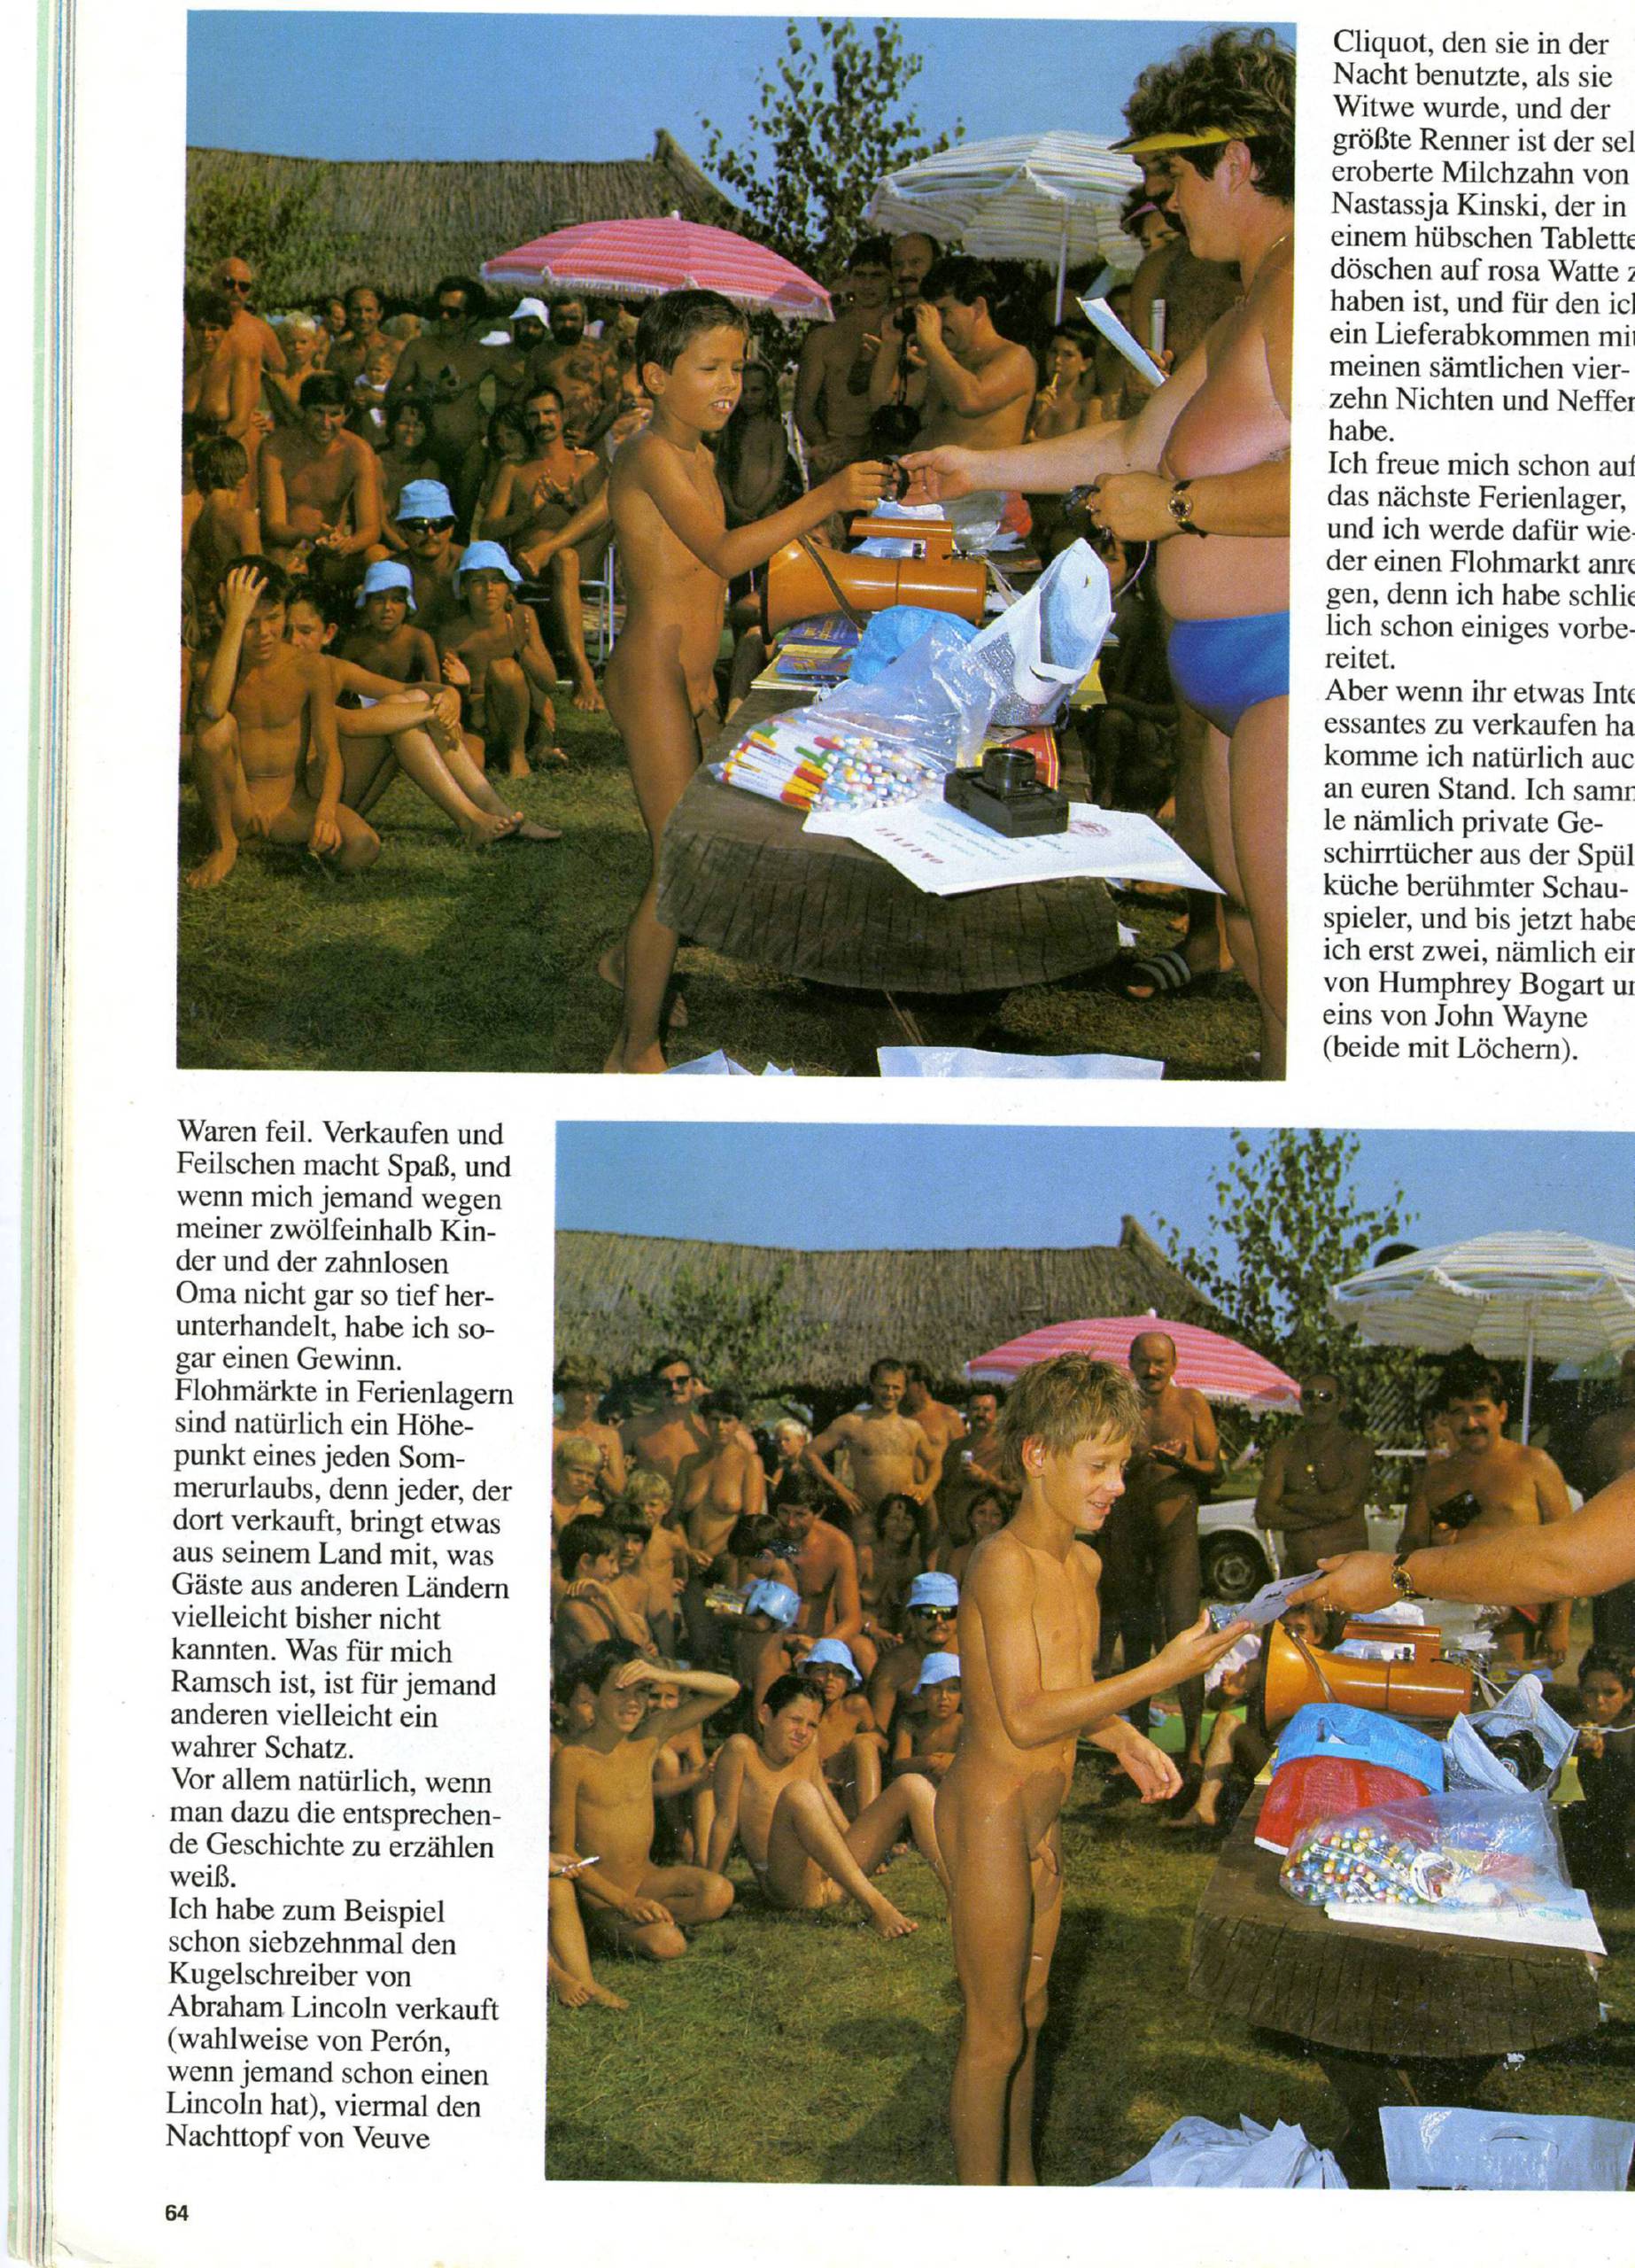 Nudist Magazines Jung und Frei Nr.51-57, 59-67 - 1